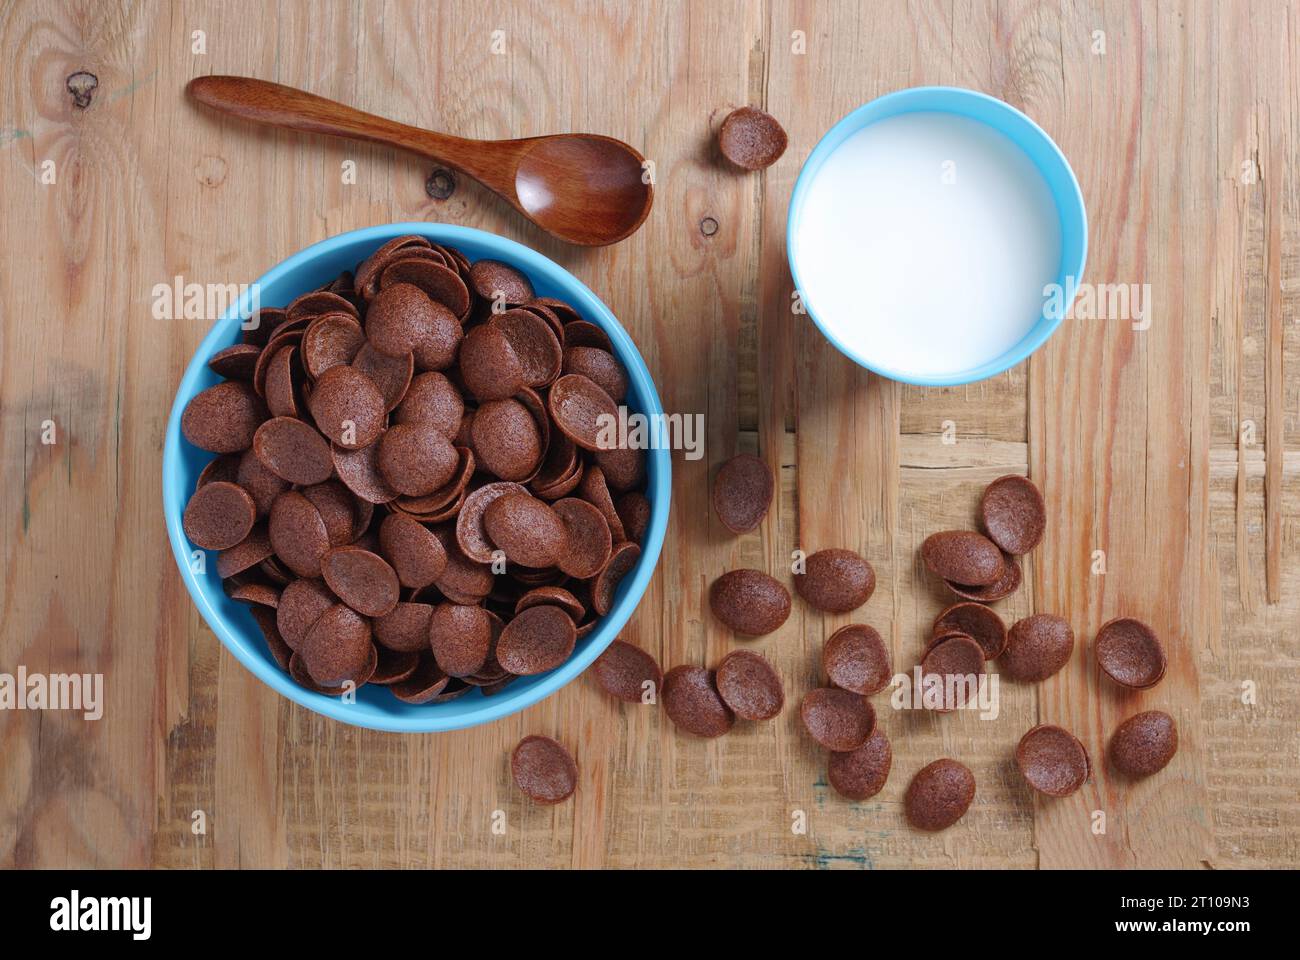 Directamente encima de la vista de los copos de maíz de chocolate en tazón azul y vaso de plástico de leche de fondo de madera viejo Foto de stock